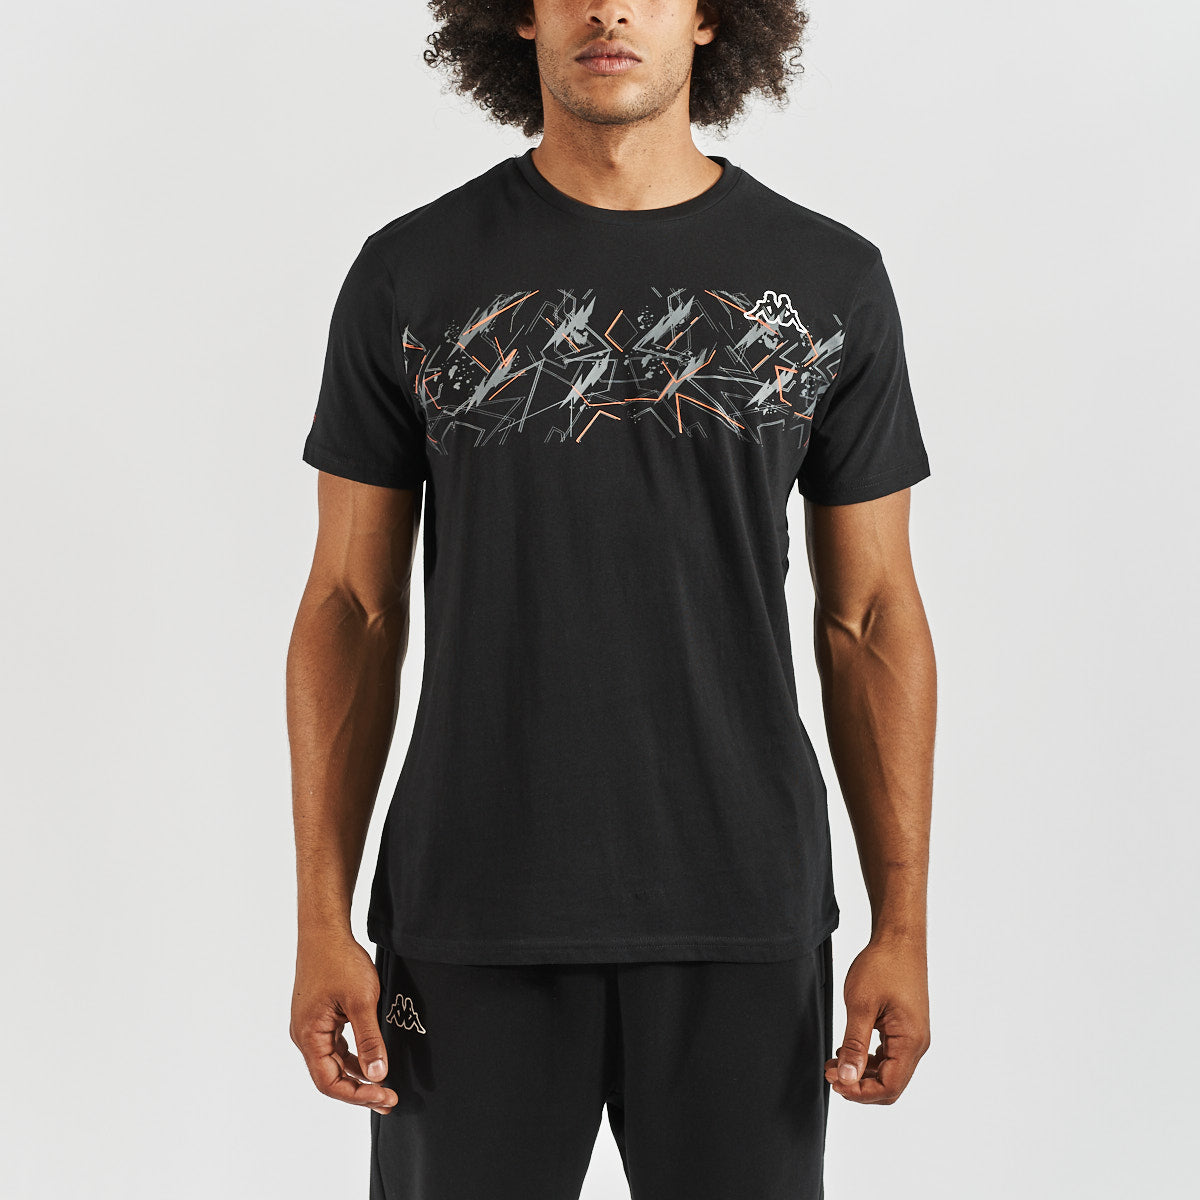 T-shirt Carmes Noir homme - image 1